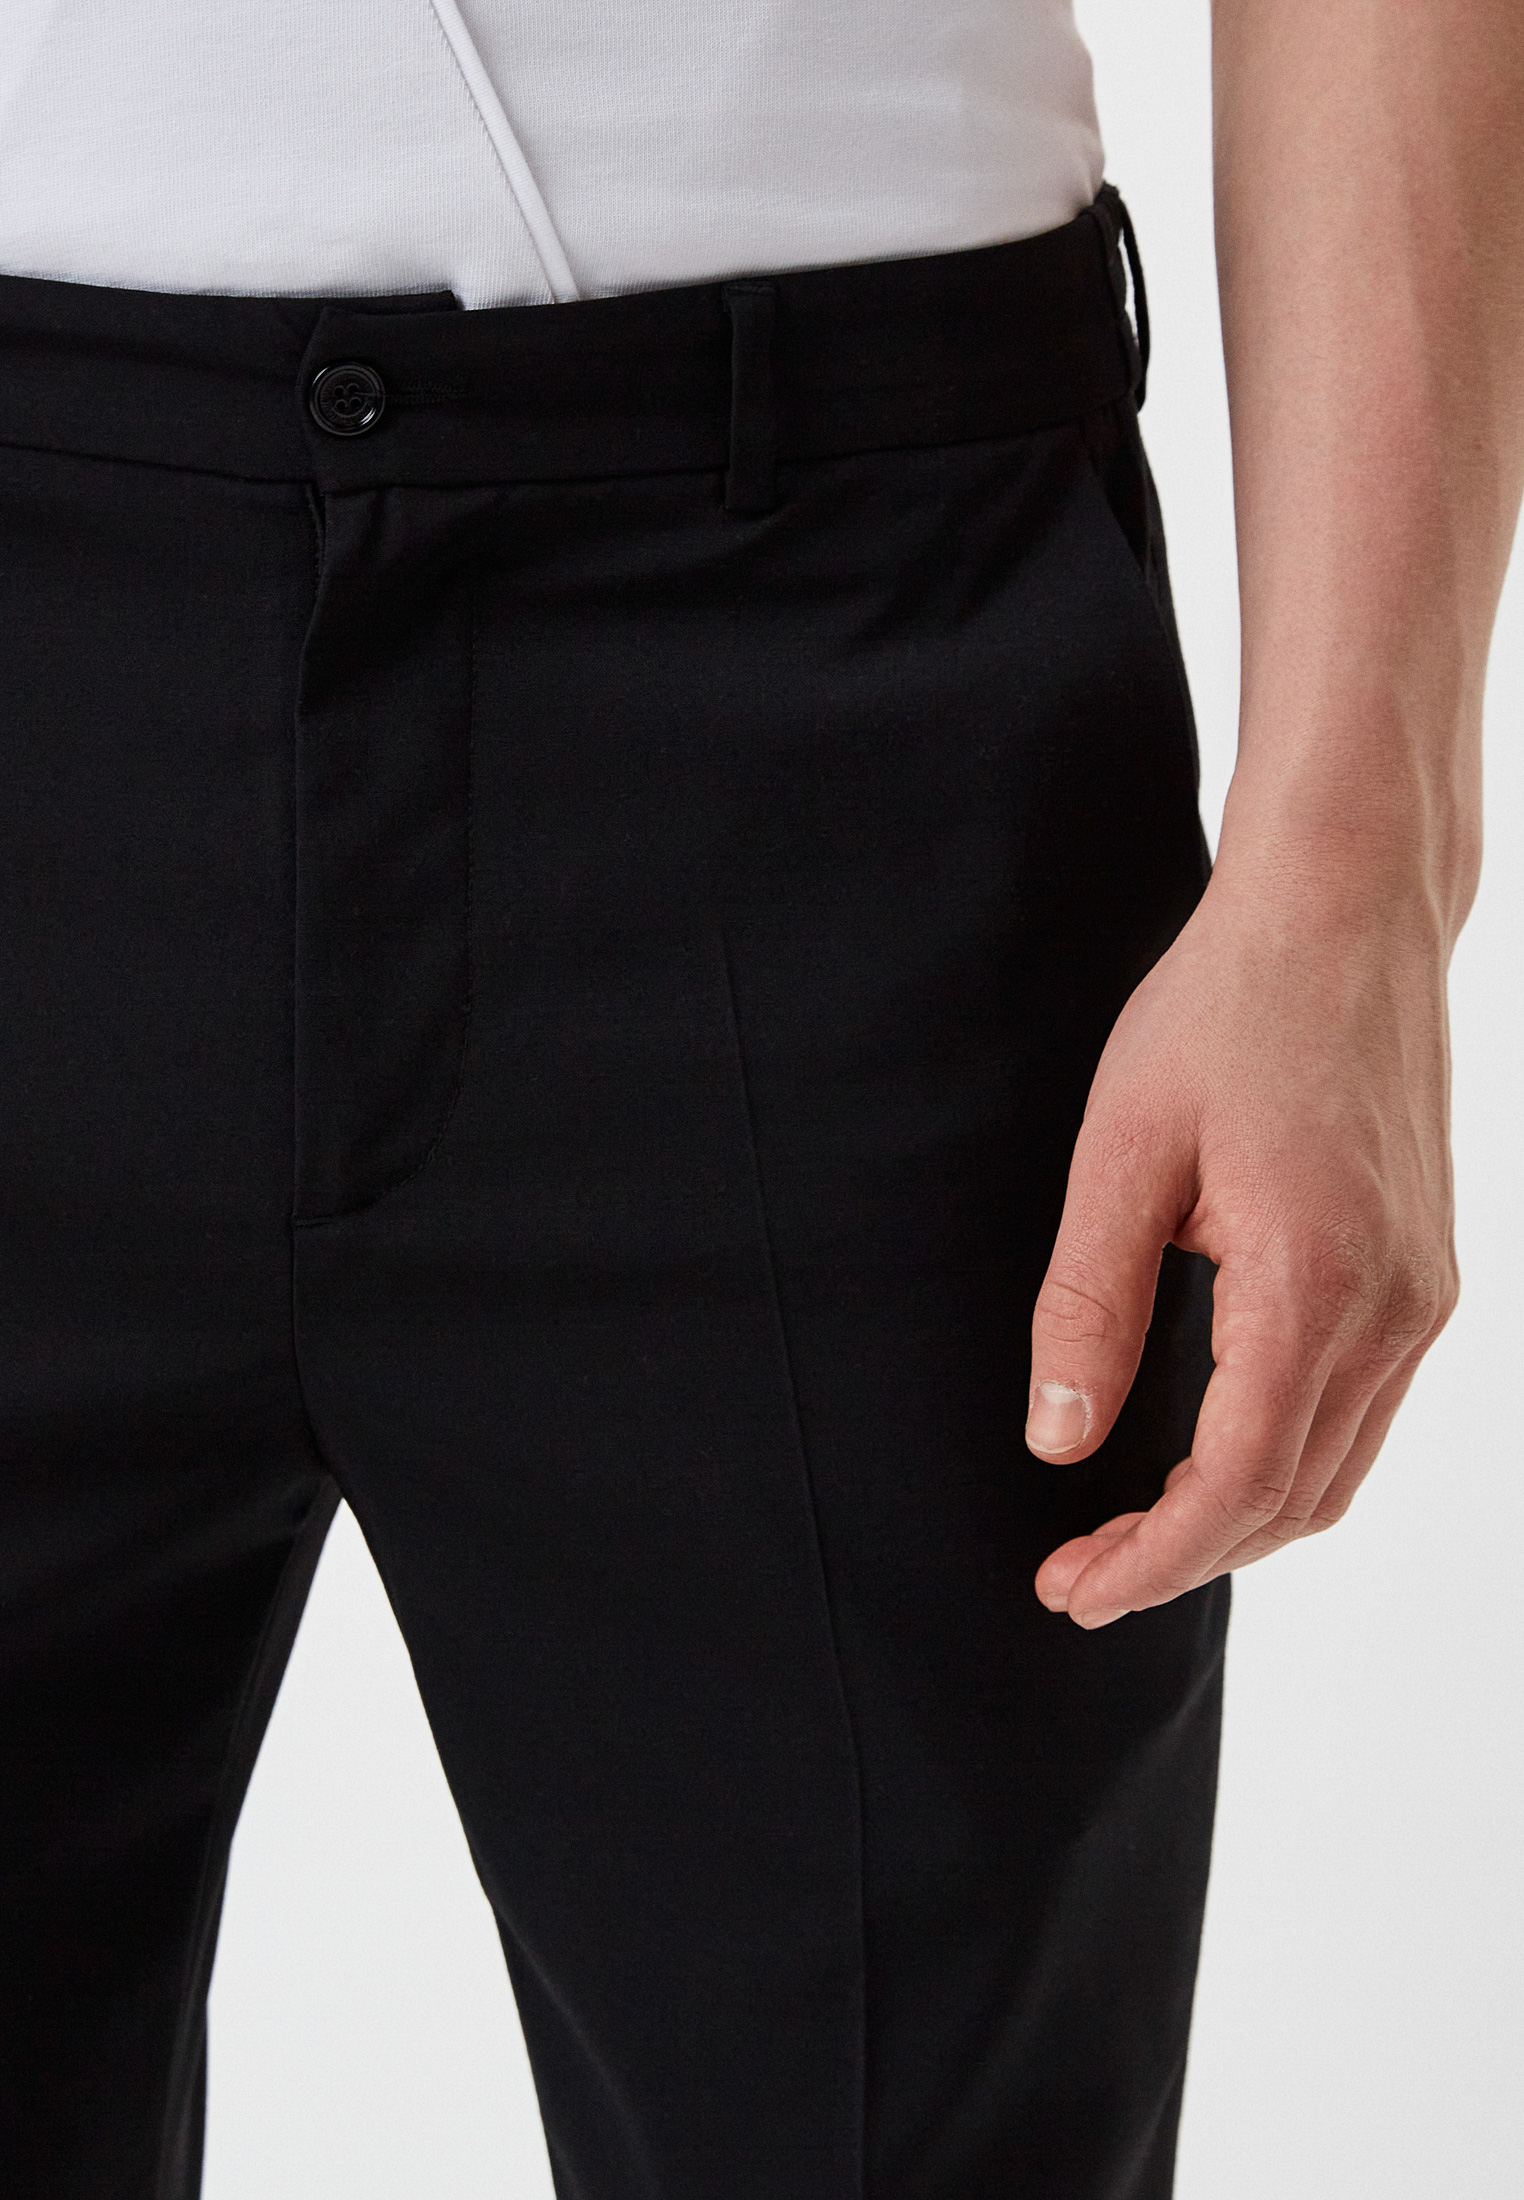 Мужские классические брюки Bikkembergs (Биккембергс) C P 080 80 S 3540: изображение 13